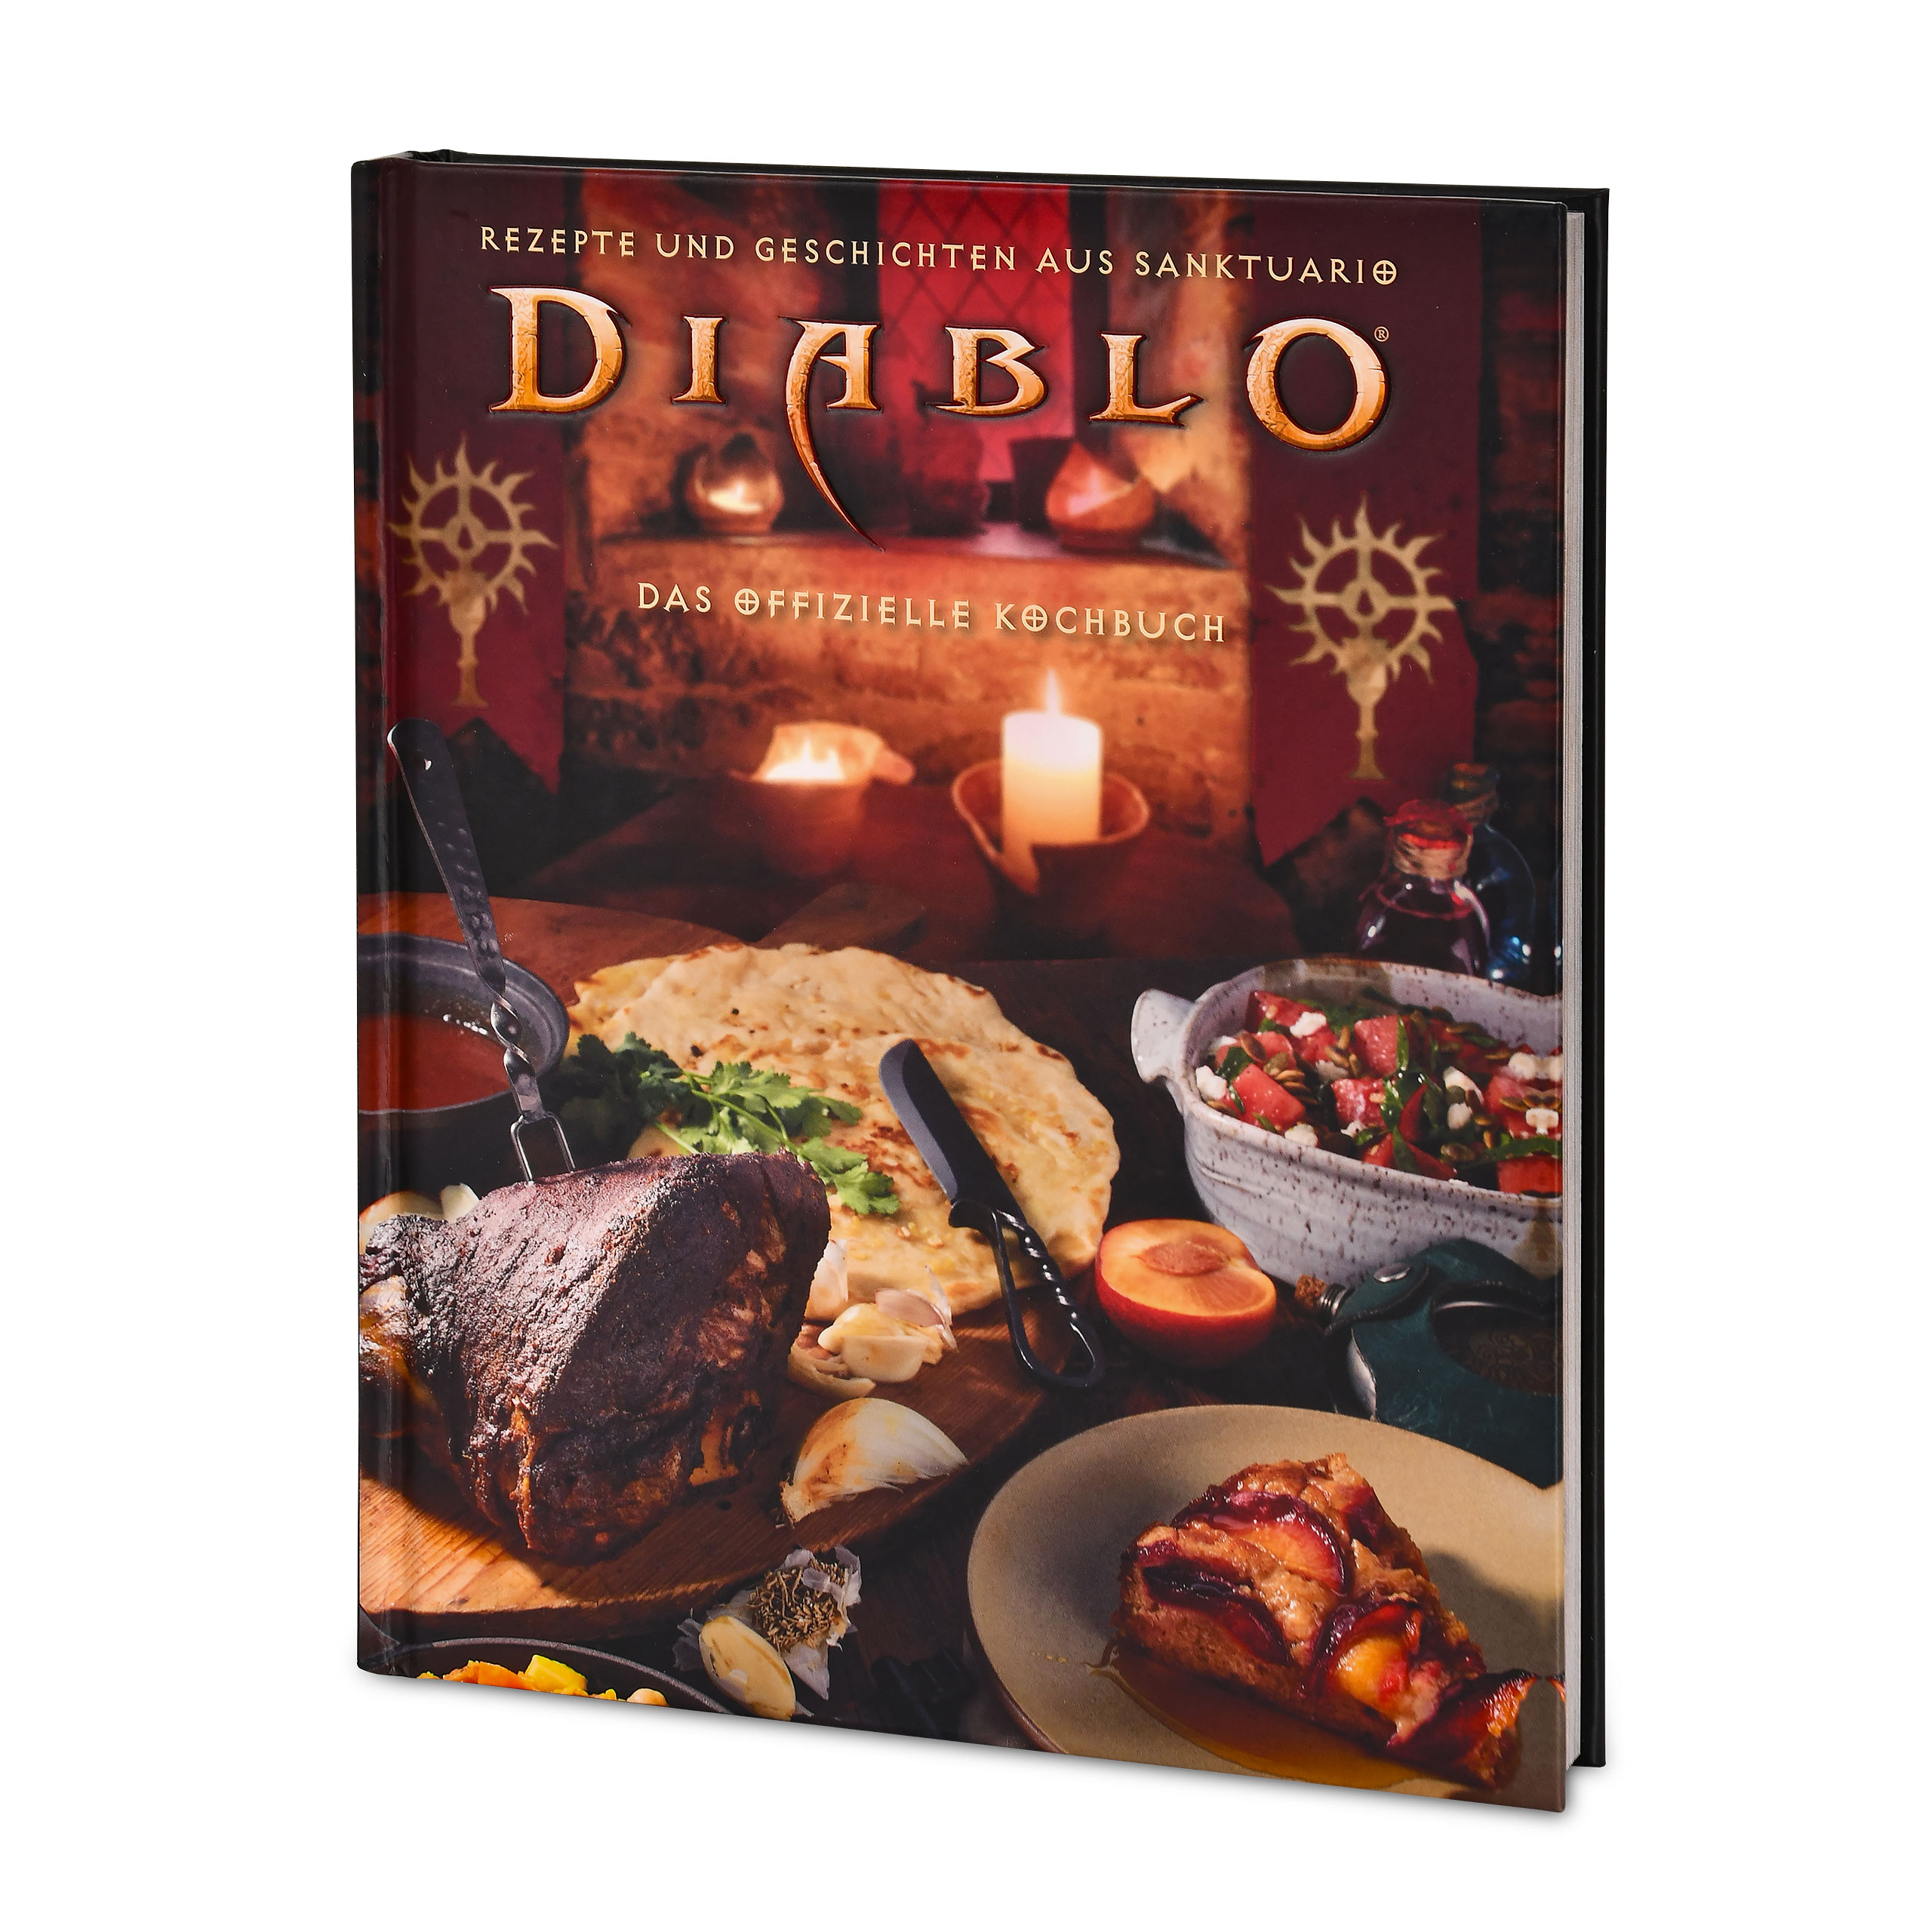 Diablo - Het Officiële Kookboek